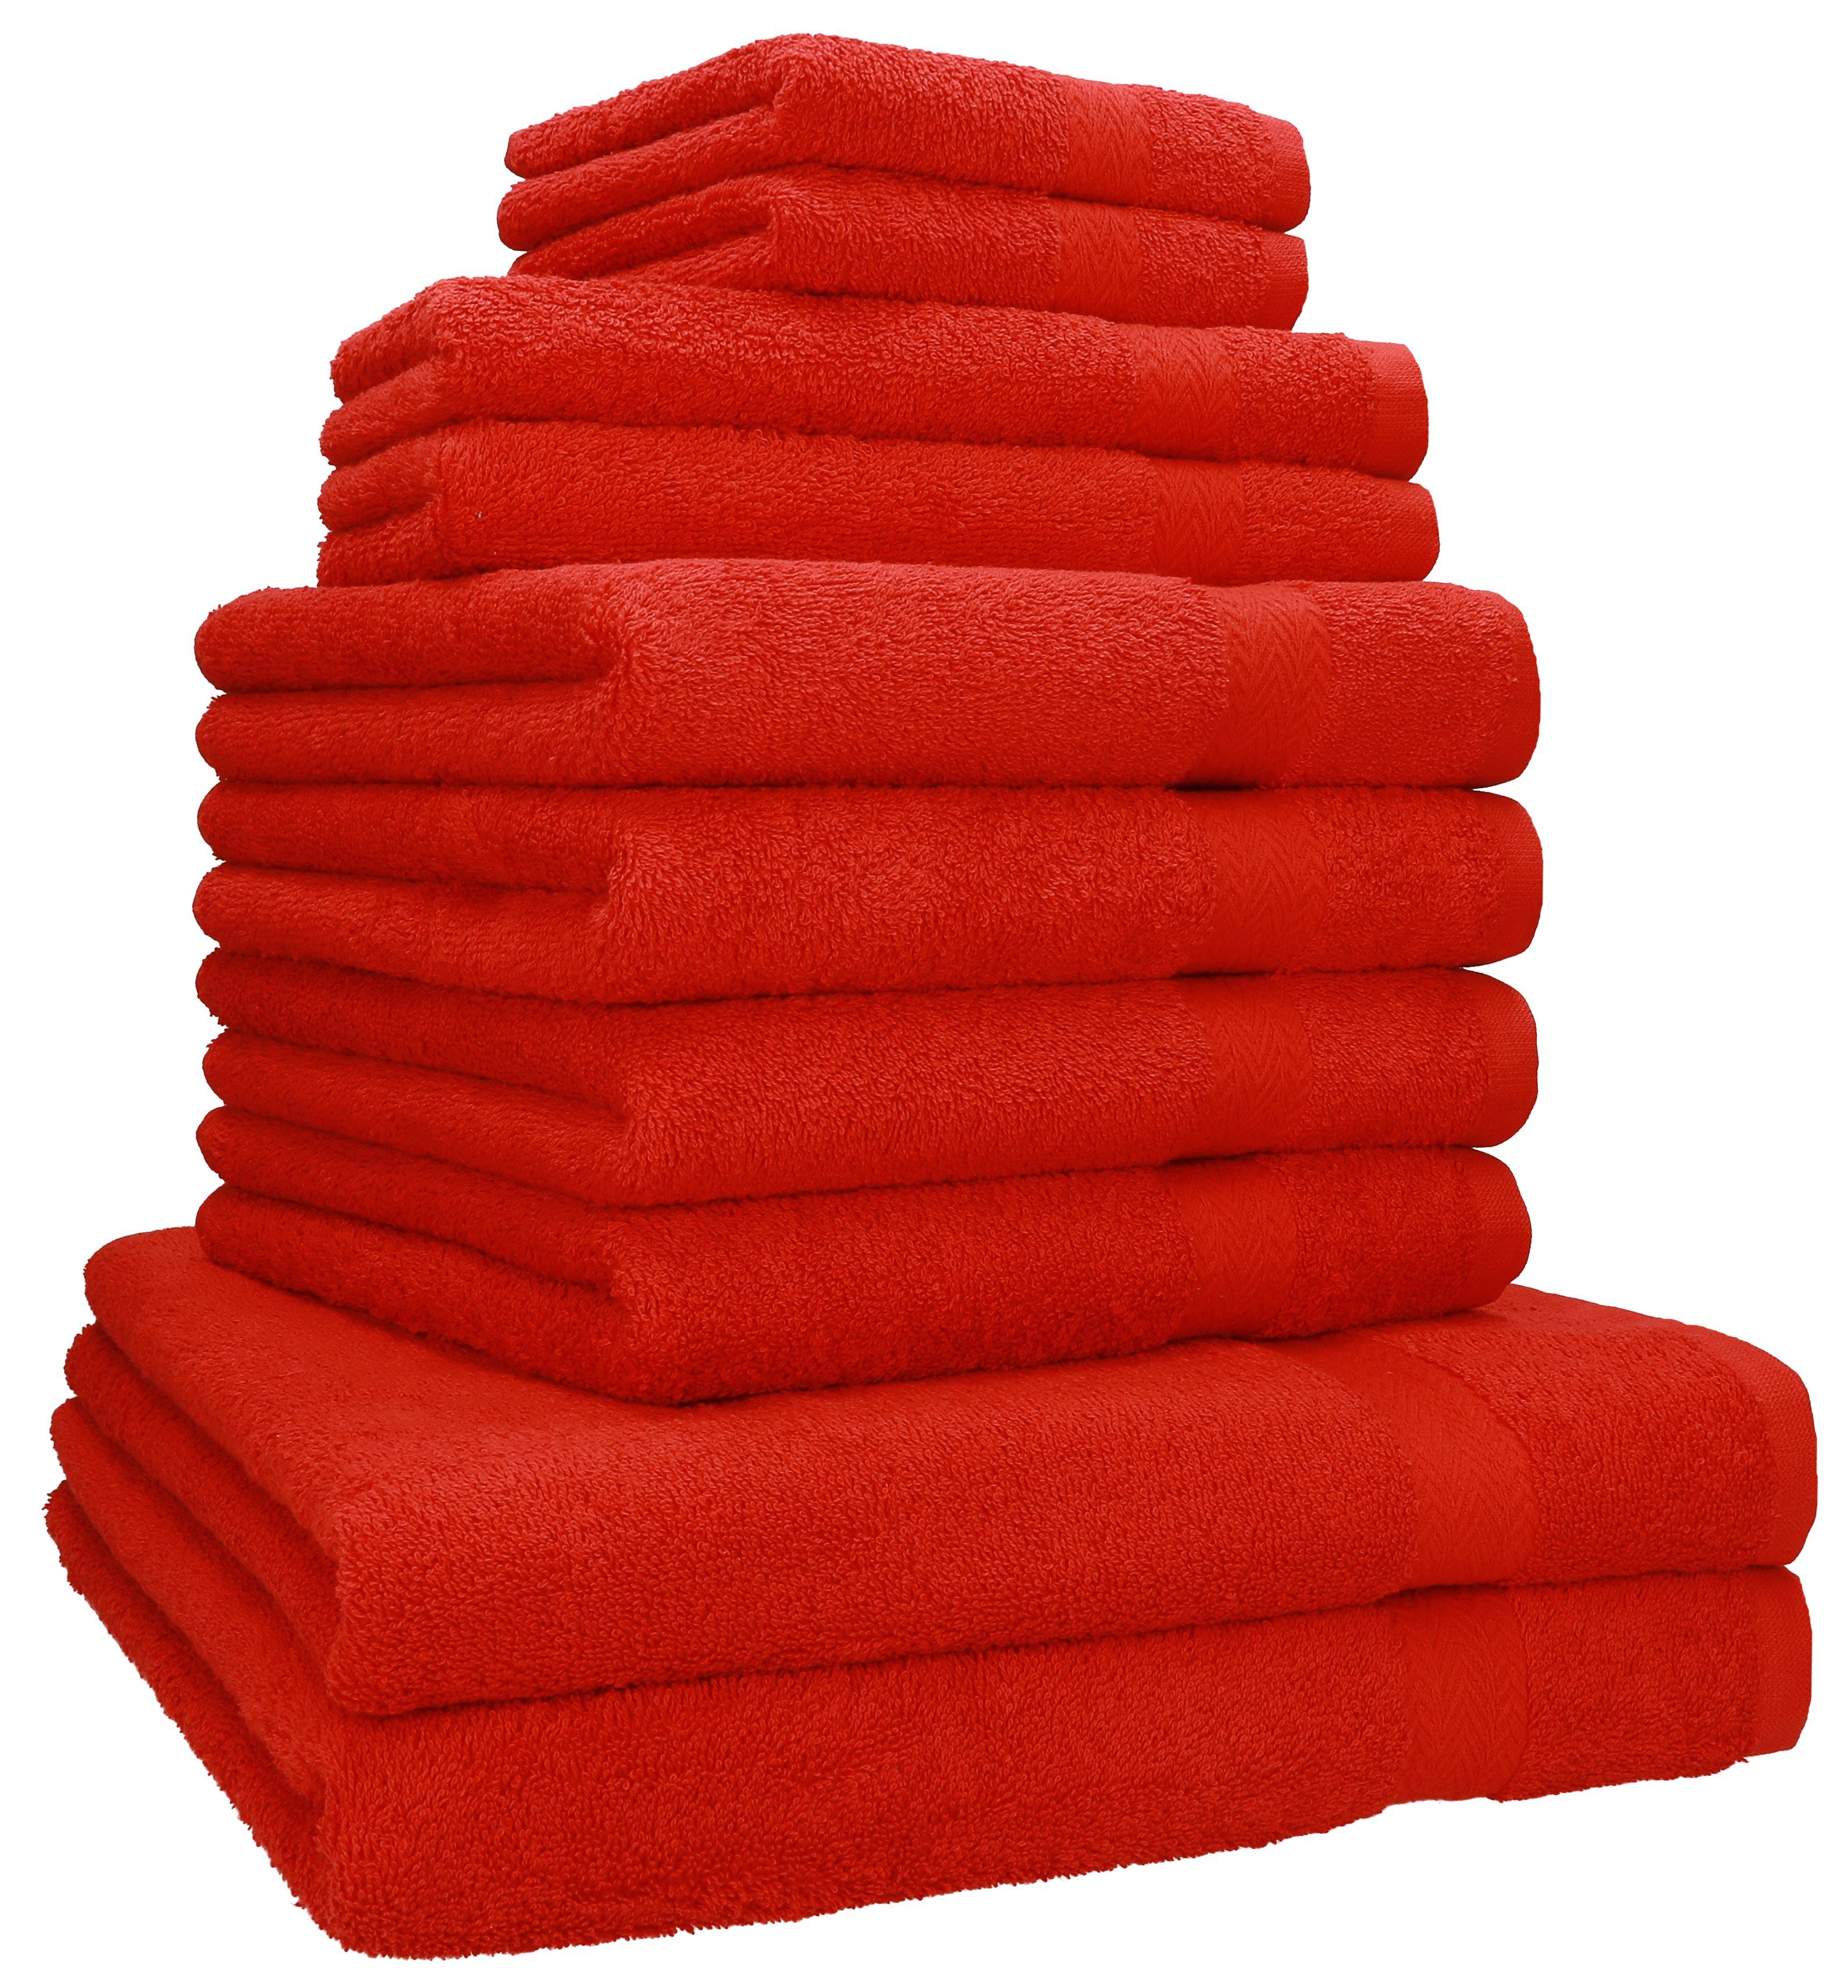 (10-tlg) rot Set 100% Handtuch Handtücher Baumwolle Classic Betz Handtuch-Set Baumwolle, 4 Gästetücher 100% Seiftücher, 2 10-TLG. 2 Duschtücher 2